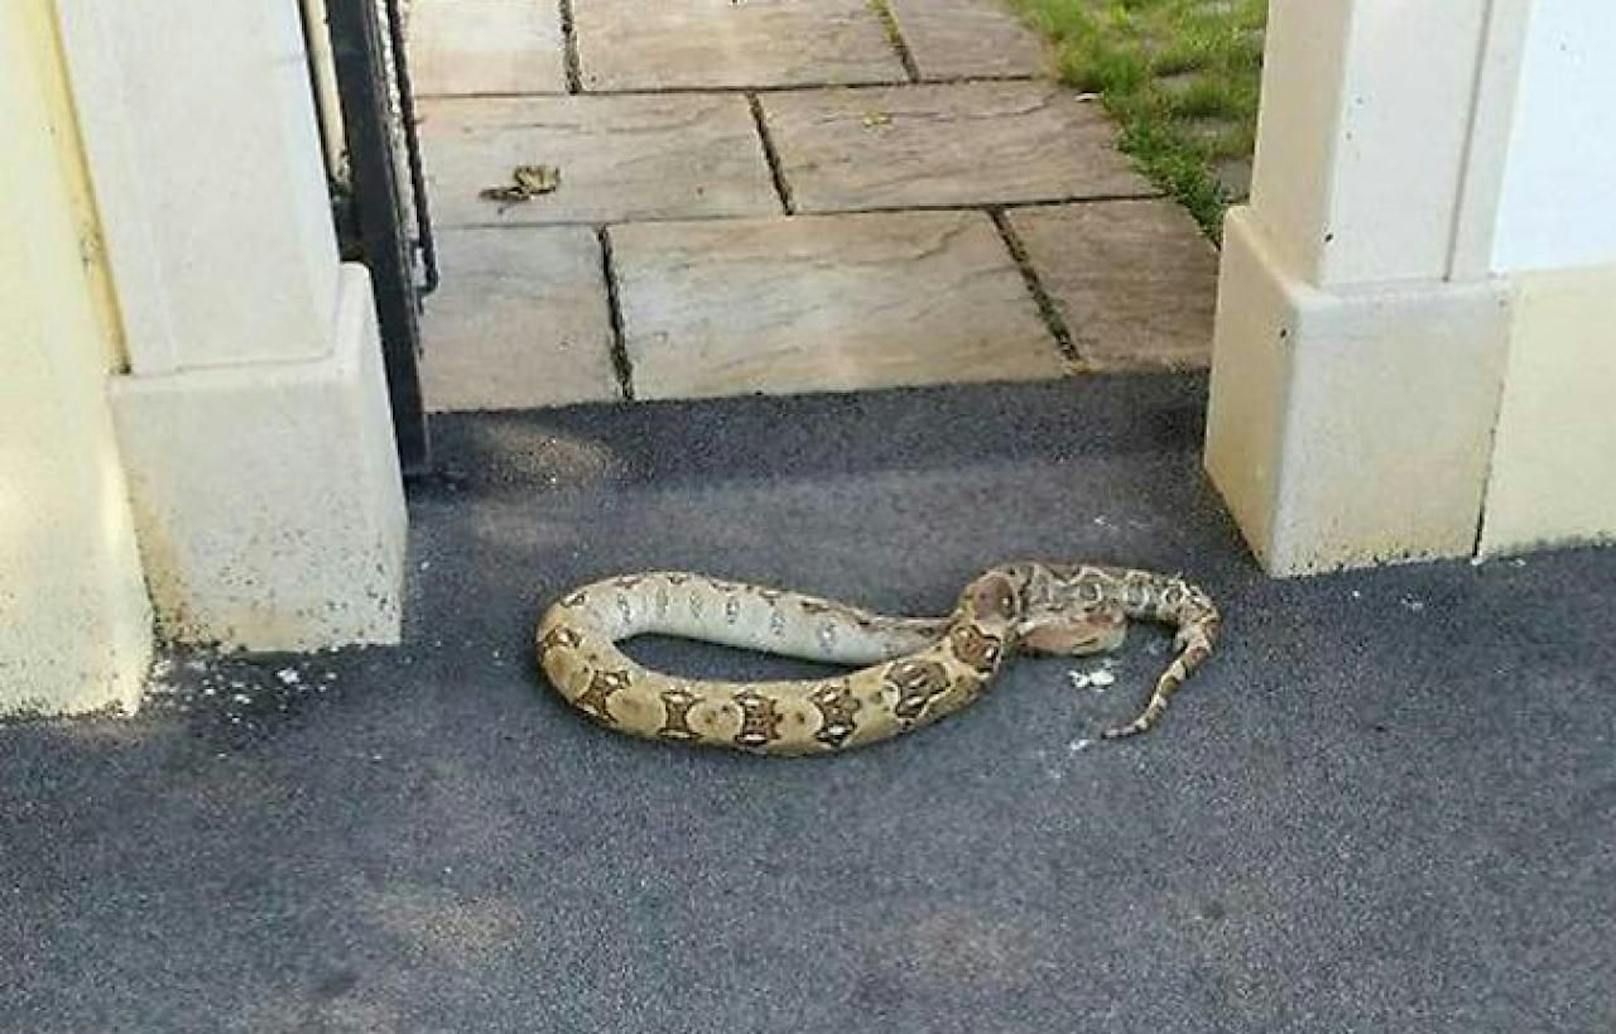 Plötzlich lag eine riesige Schlange vor der Haustür